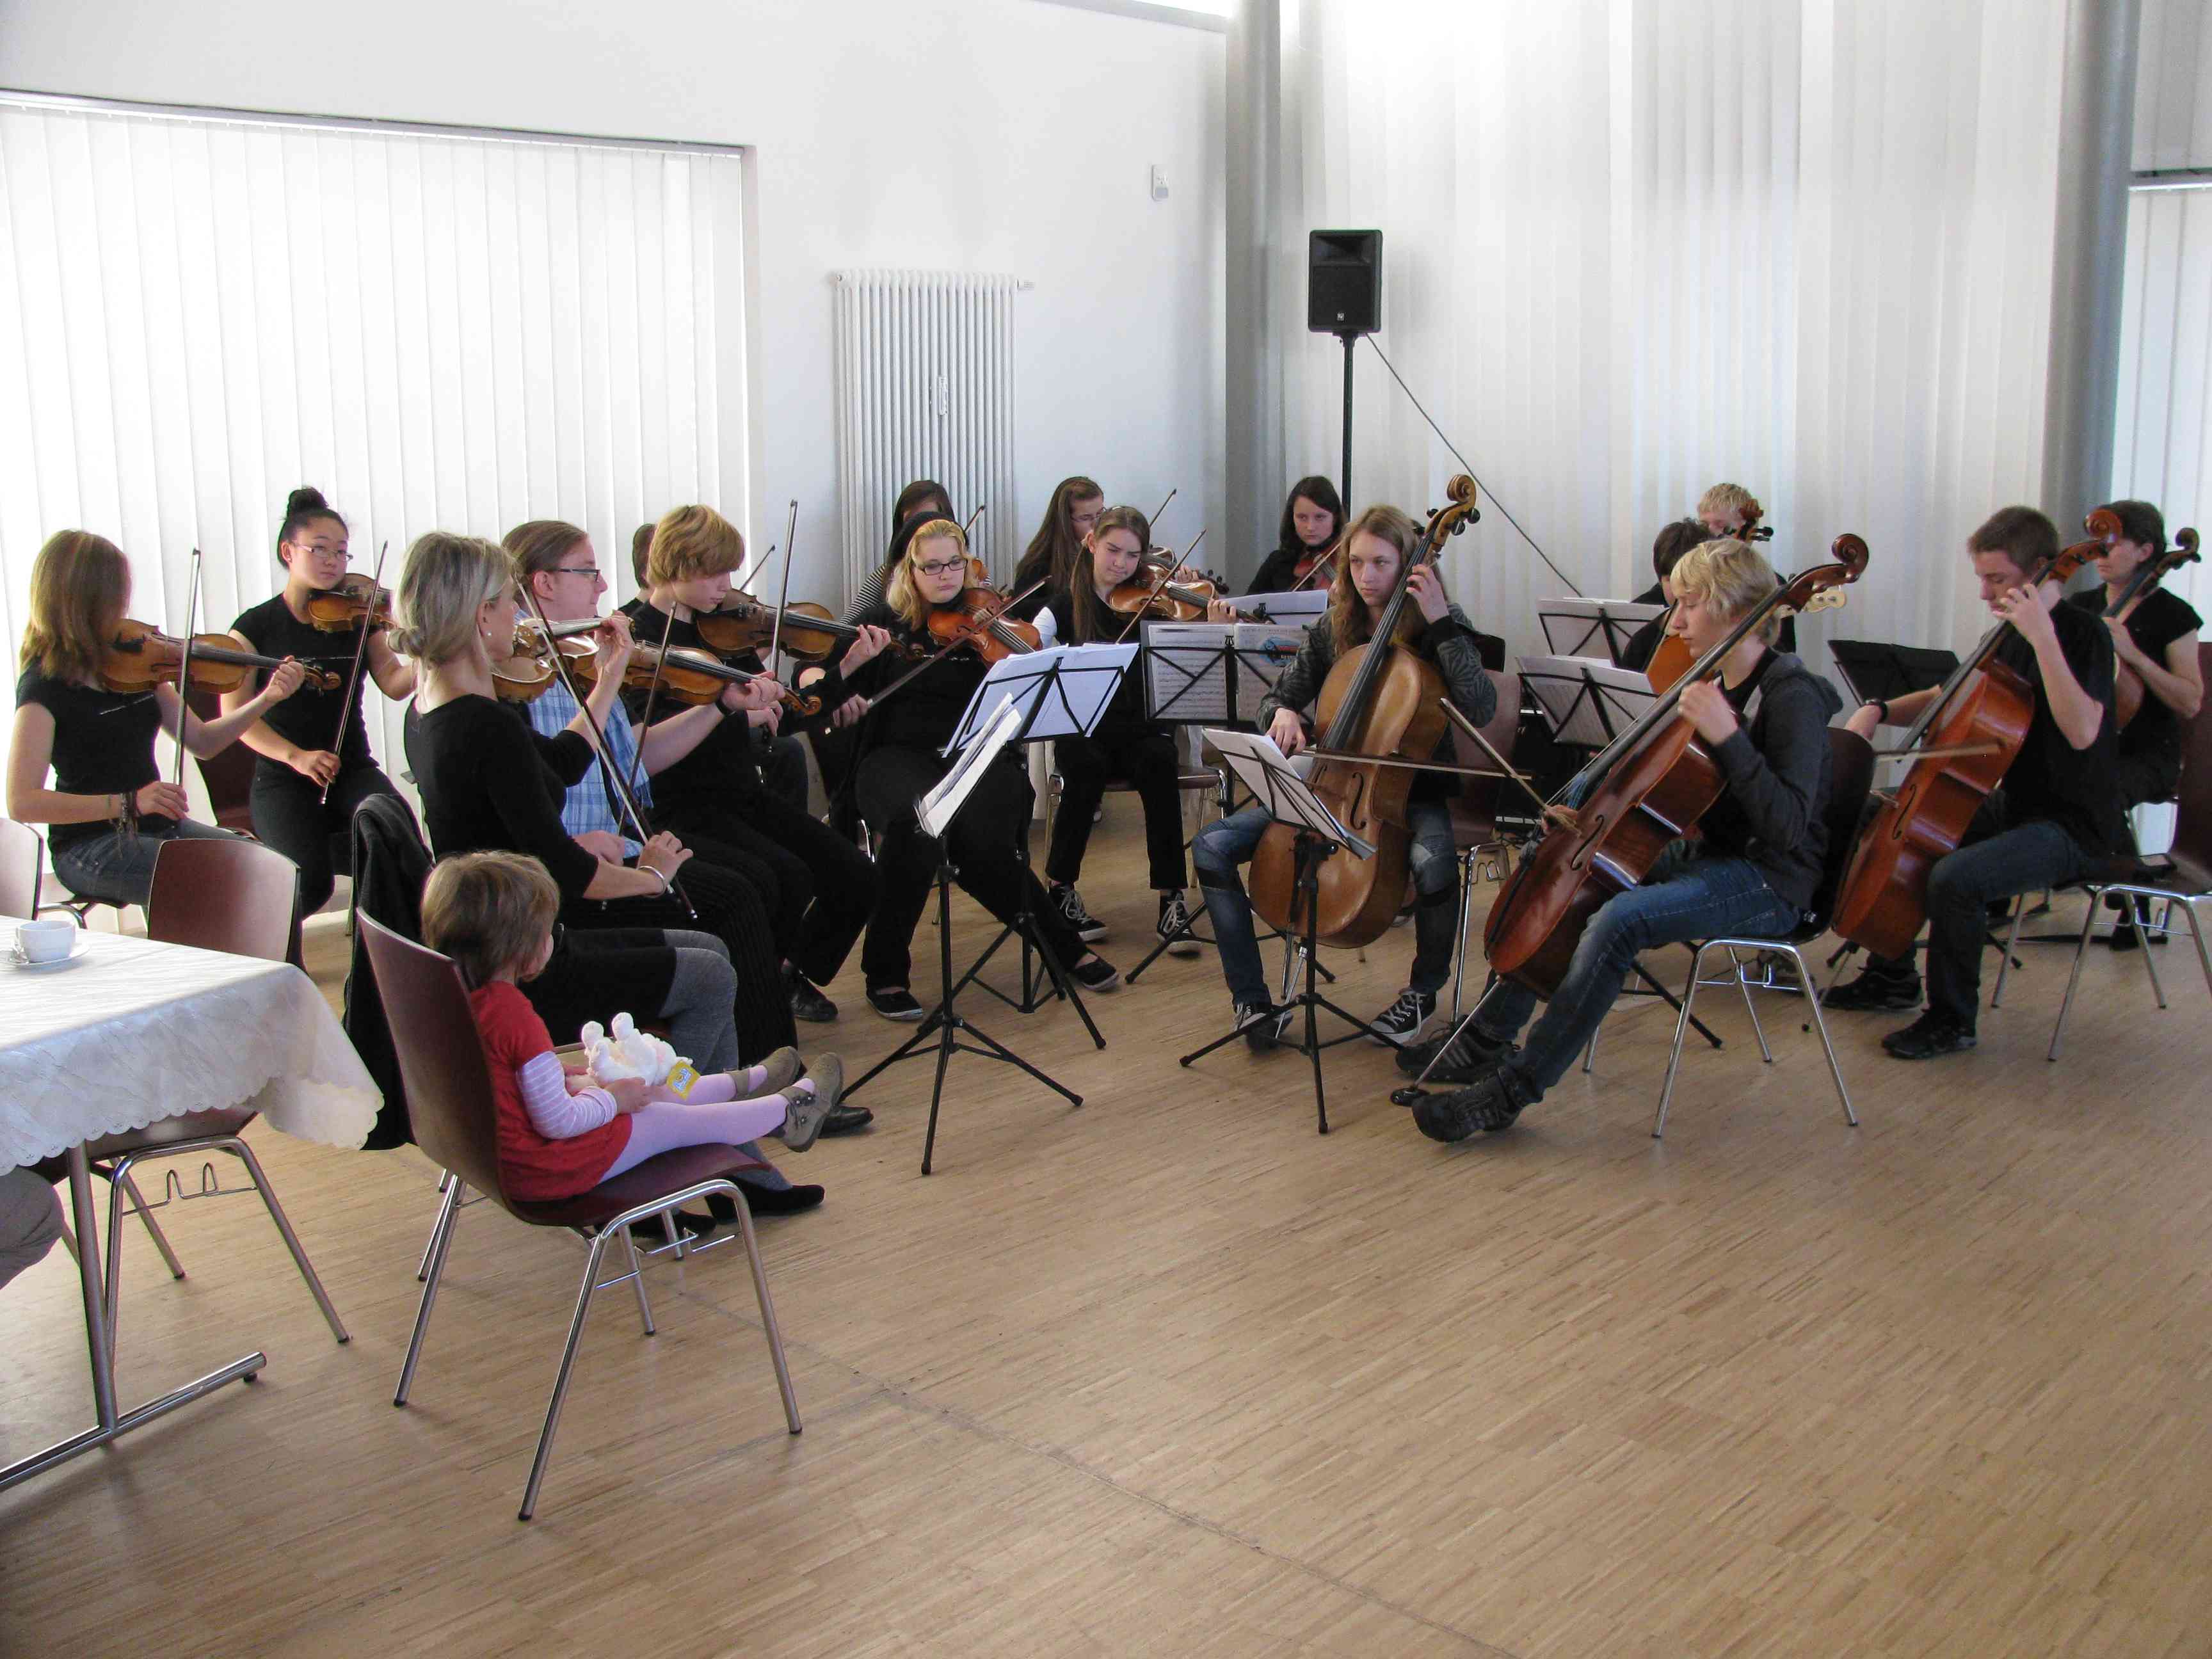 Das Orchester der Musikschule Oberhavel unter der Leitung von Sabine Belinski spielte zur Festveranstaltung